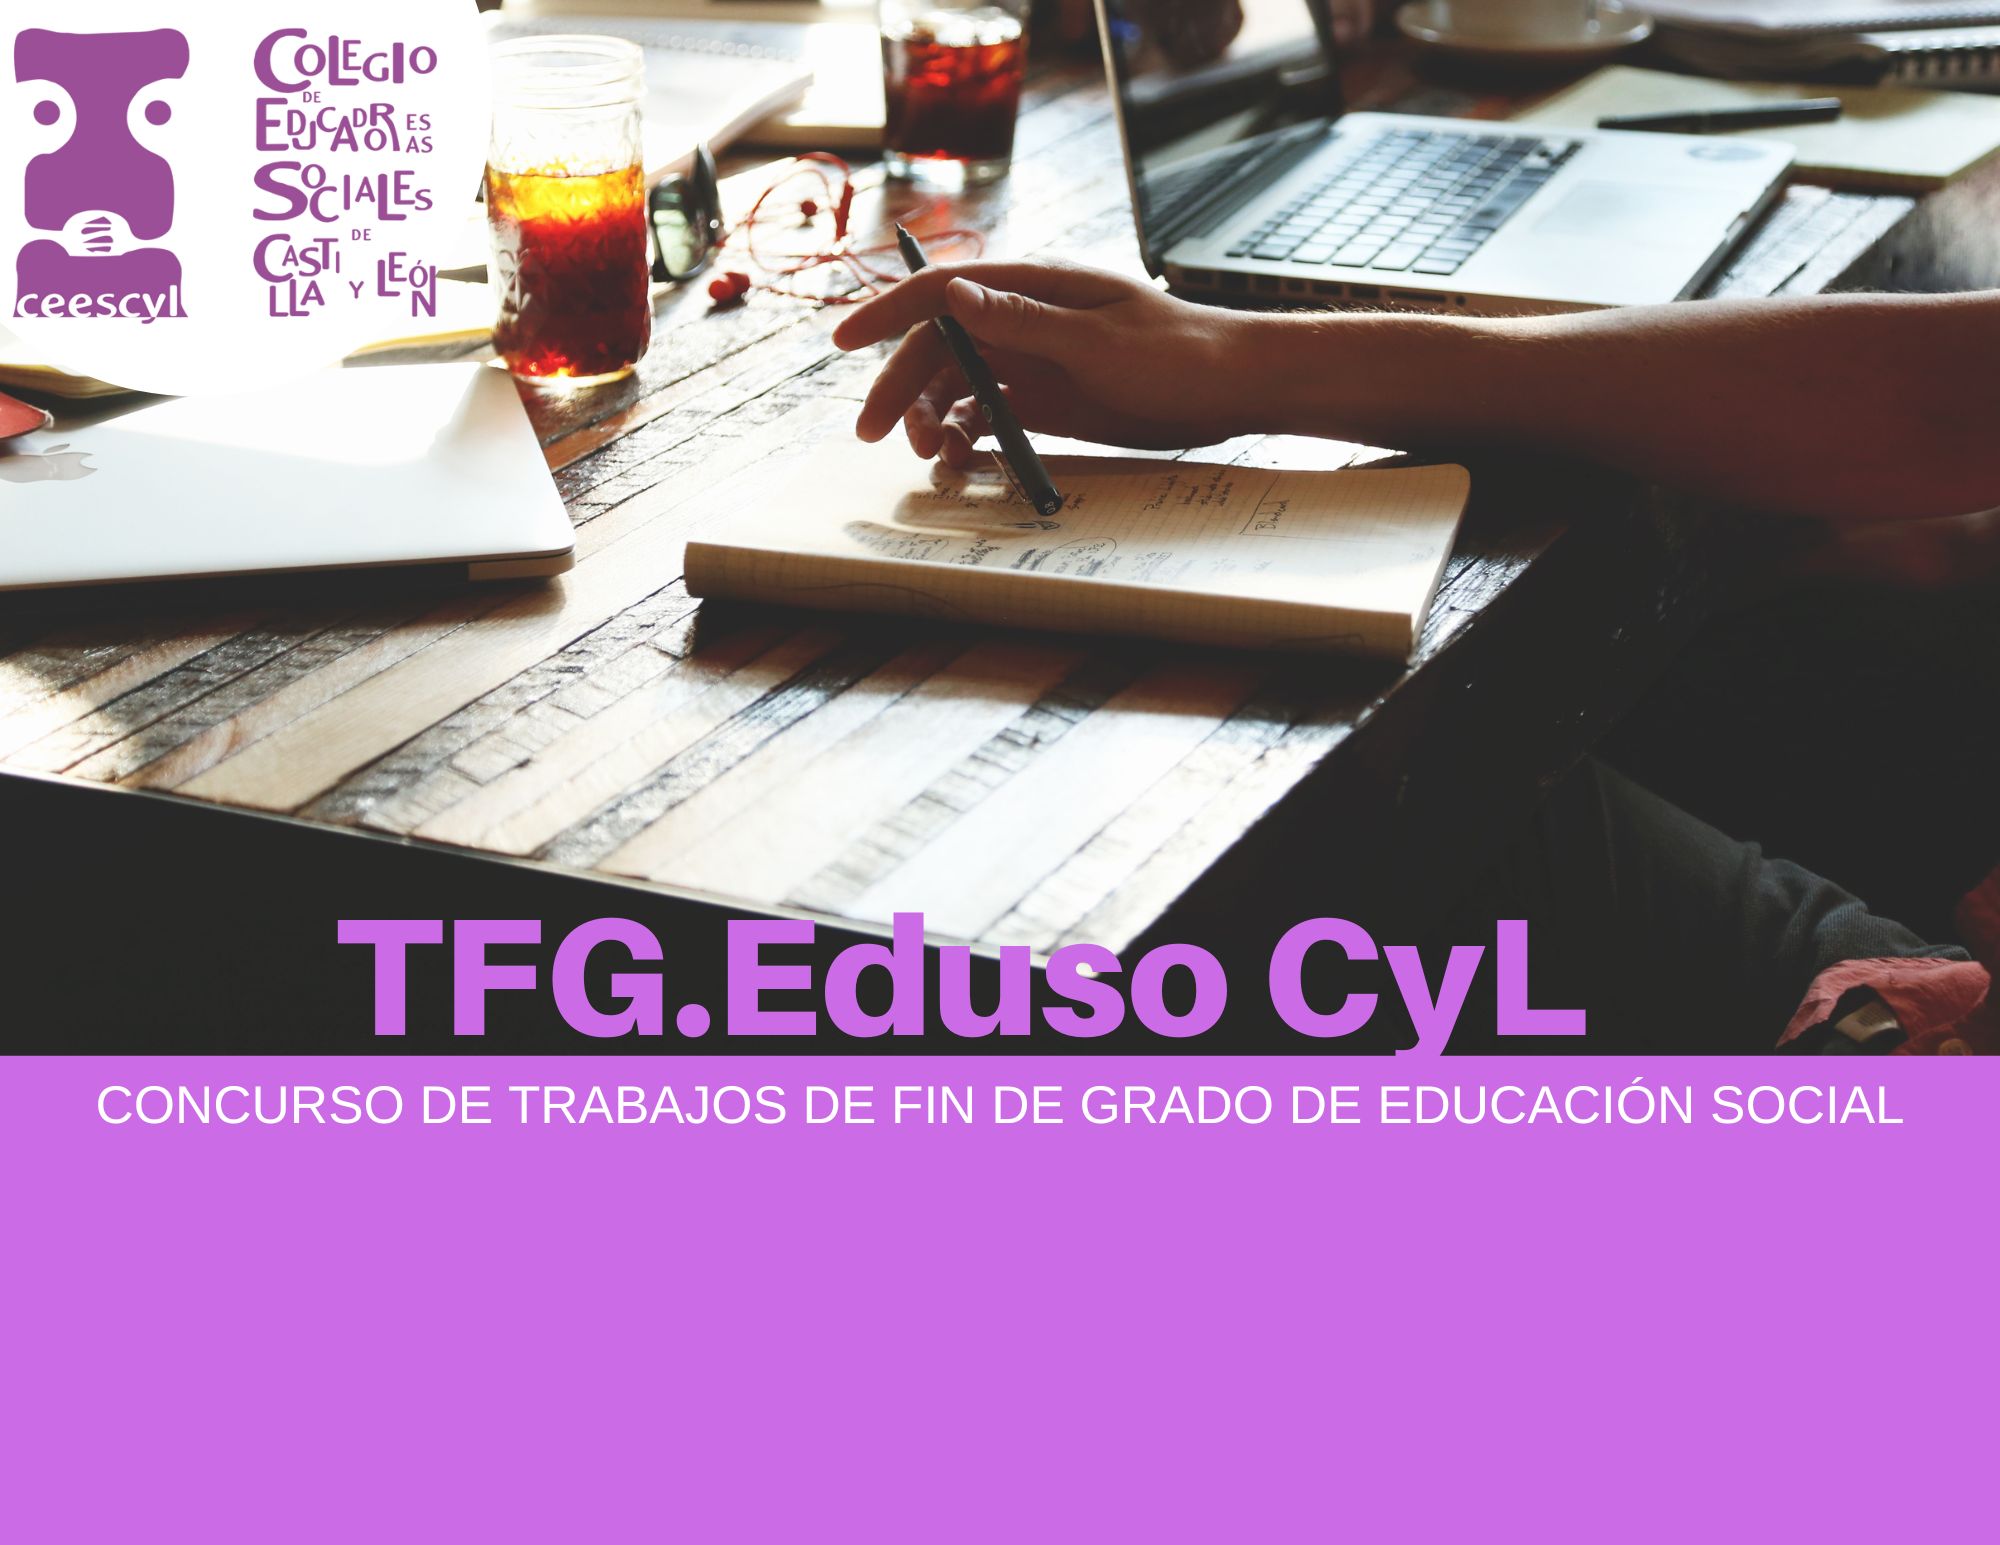 Concurso TFG.EDUSO CYL